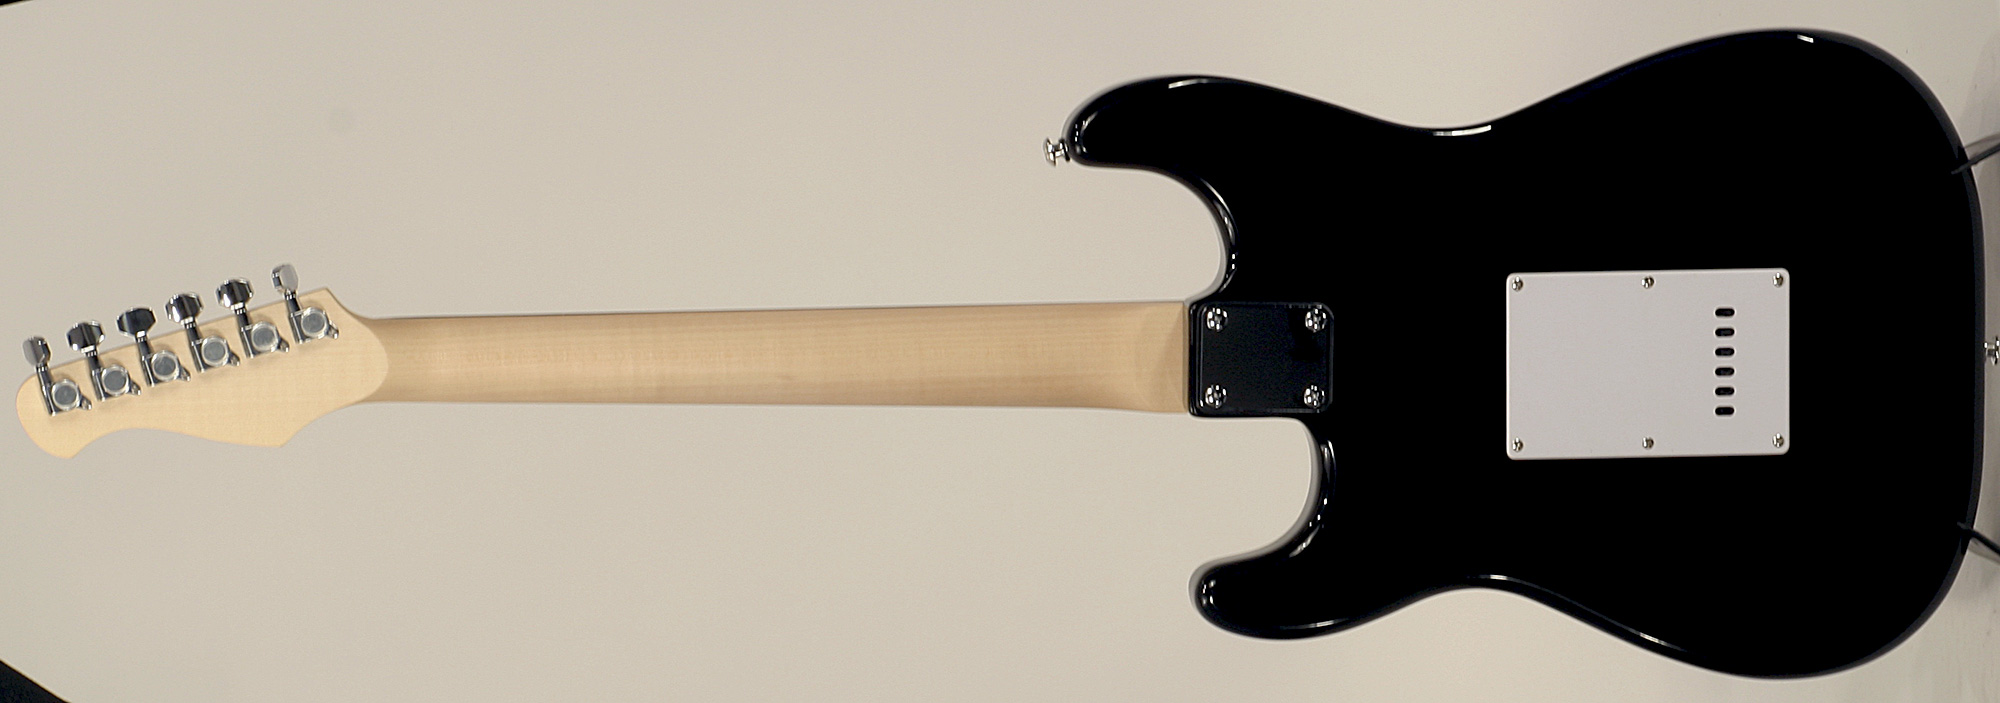 Eastone Str70-blk 3s Pur - Black - Guitarra eléctrica con forma de str. - Variation 2